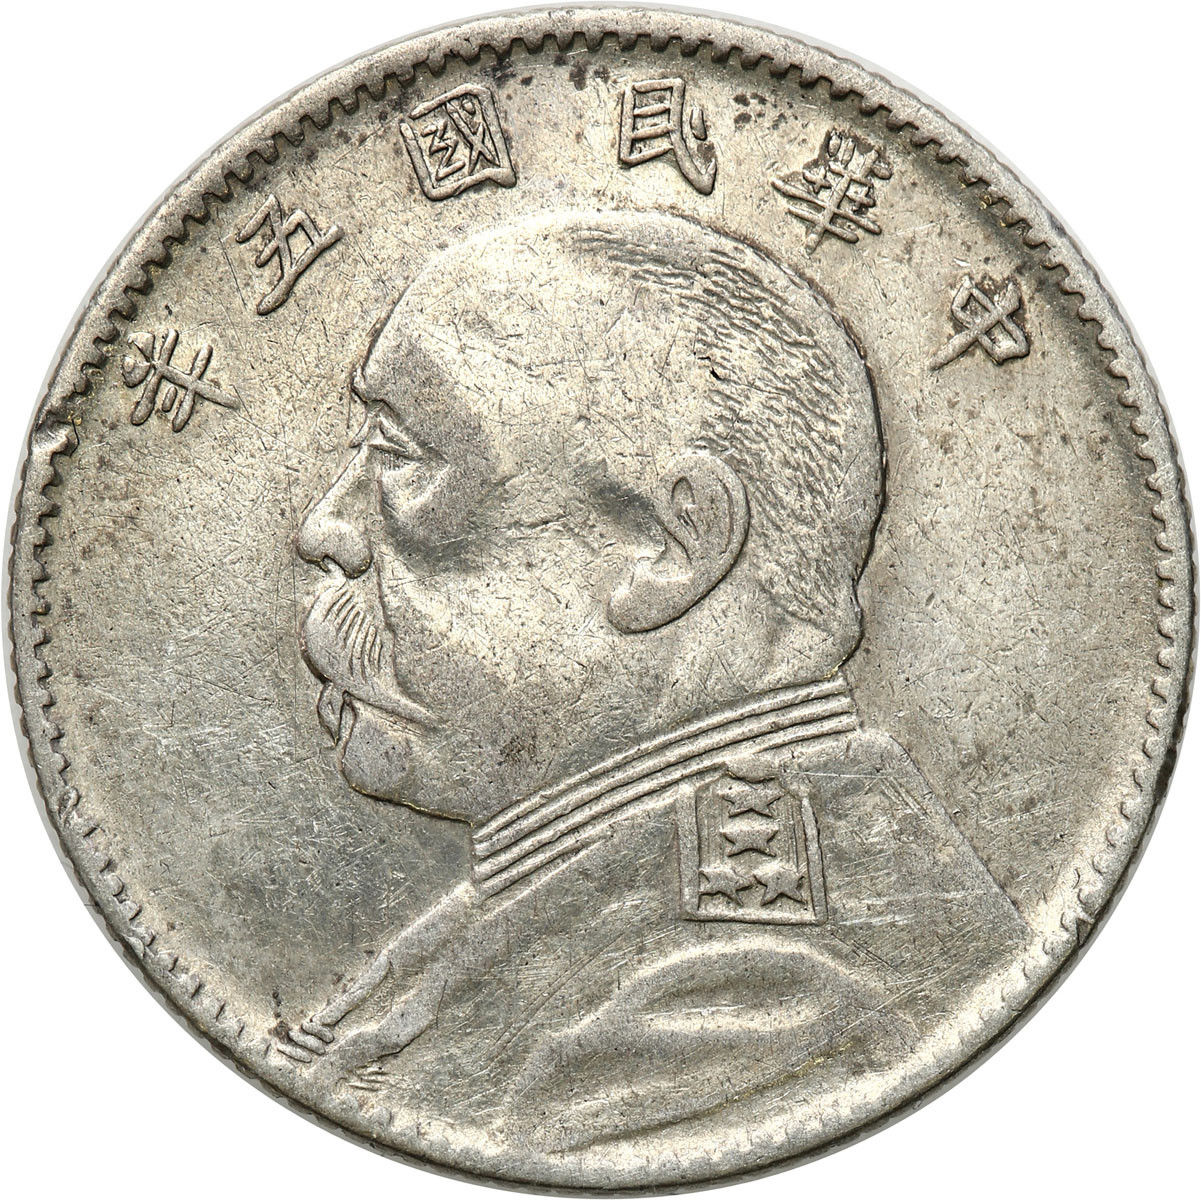 Chiny, Republika. 20 centów Year 3 (1914)